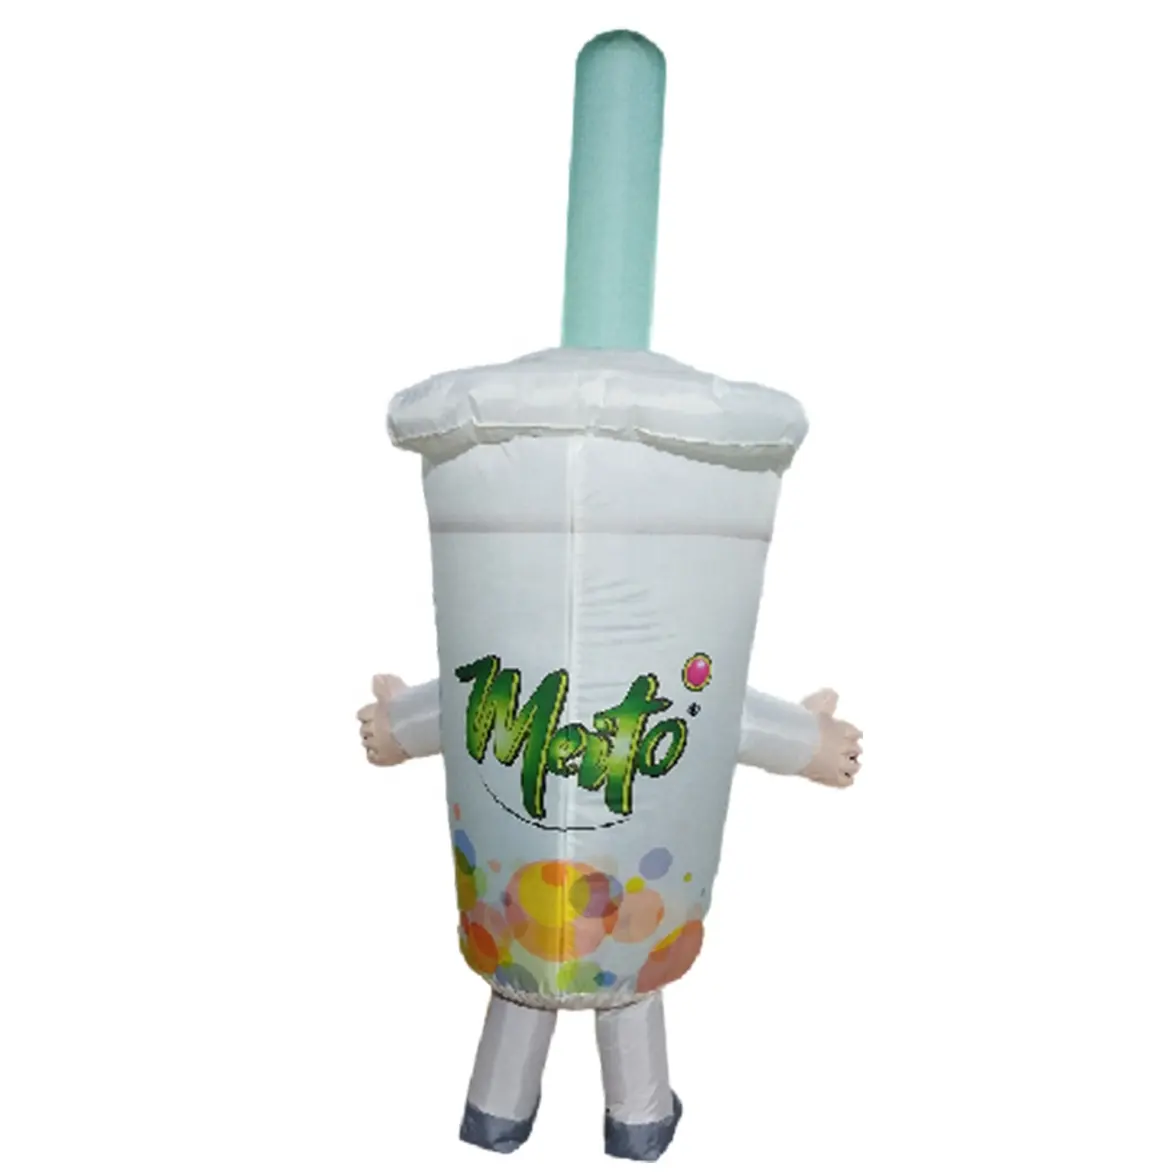 Vaso de publicidad inflable personalizado, disfraz para caminar, botella inflable, 2mH, precio al por mayor, gran oferta